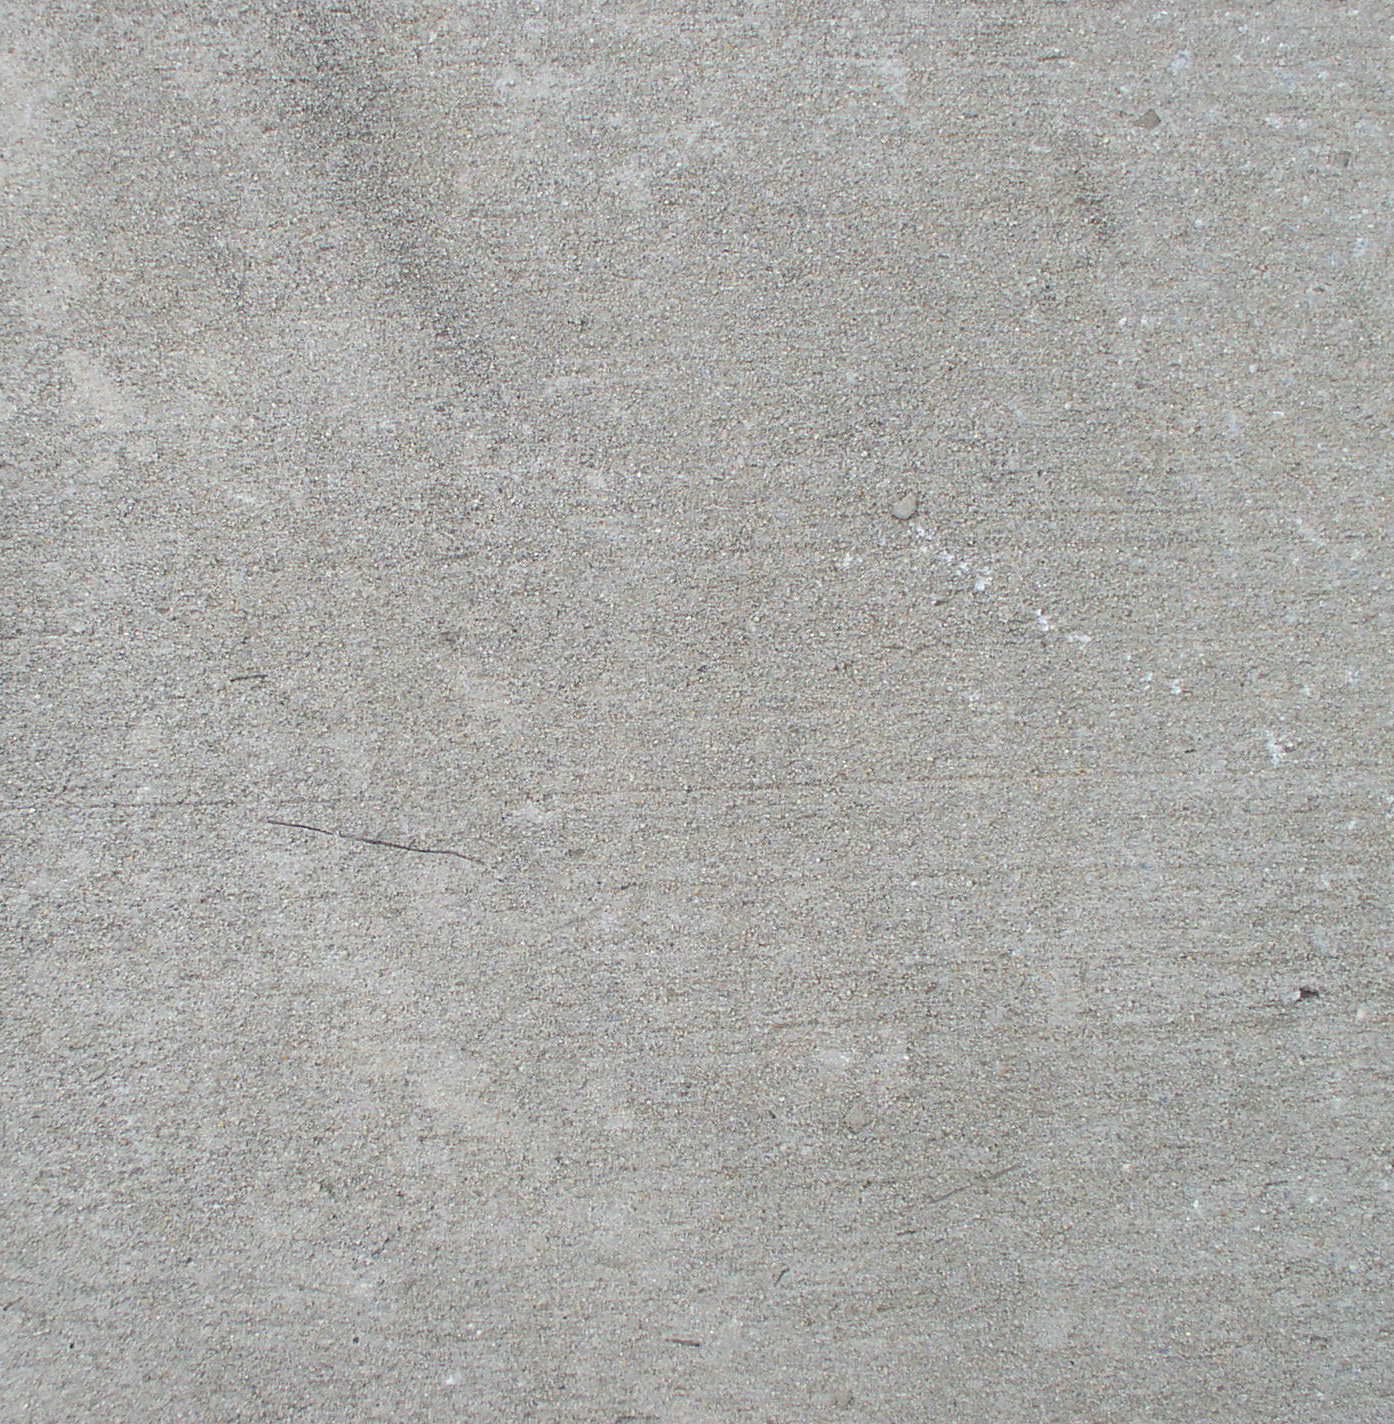 Бетон, текстура фон бетона, фото бетон